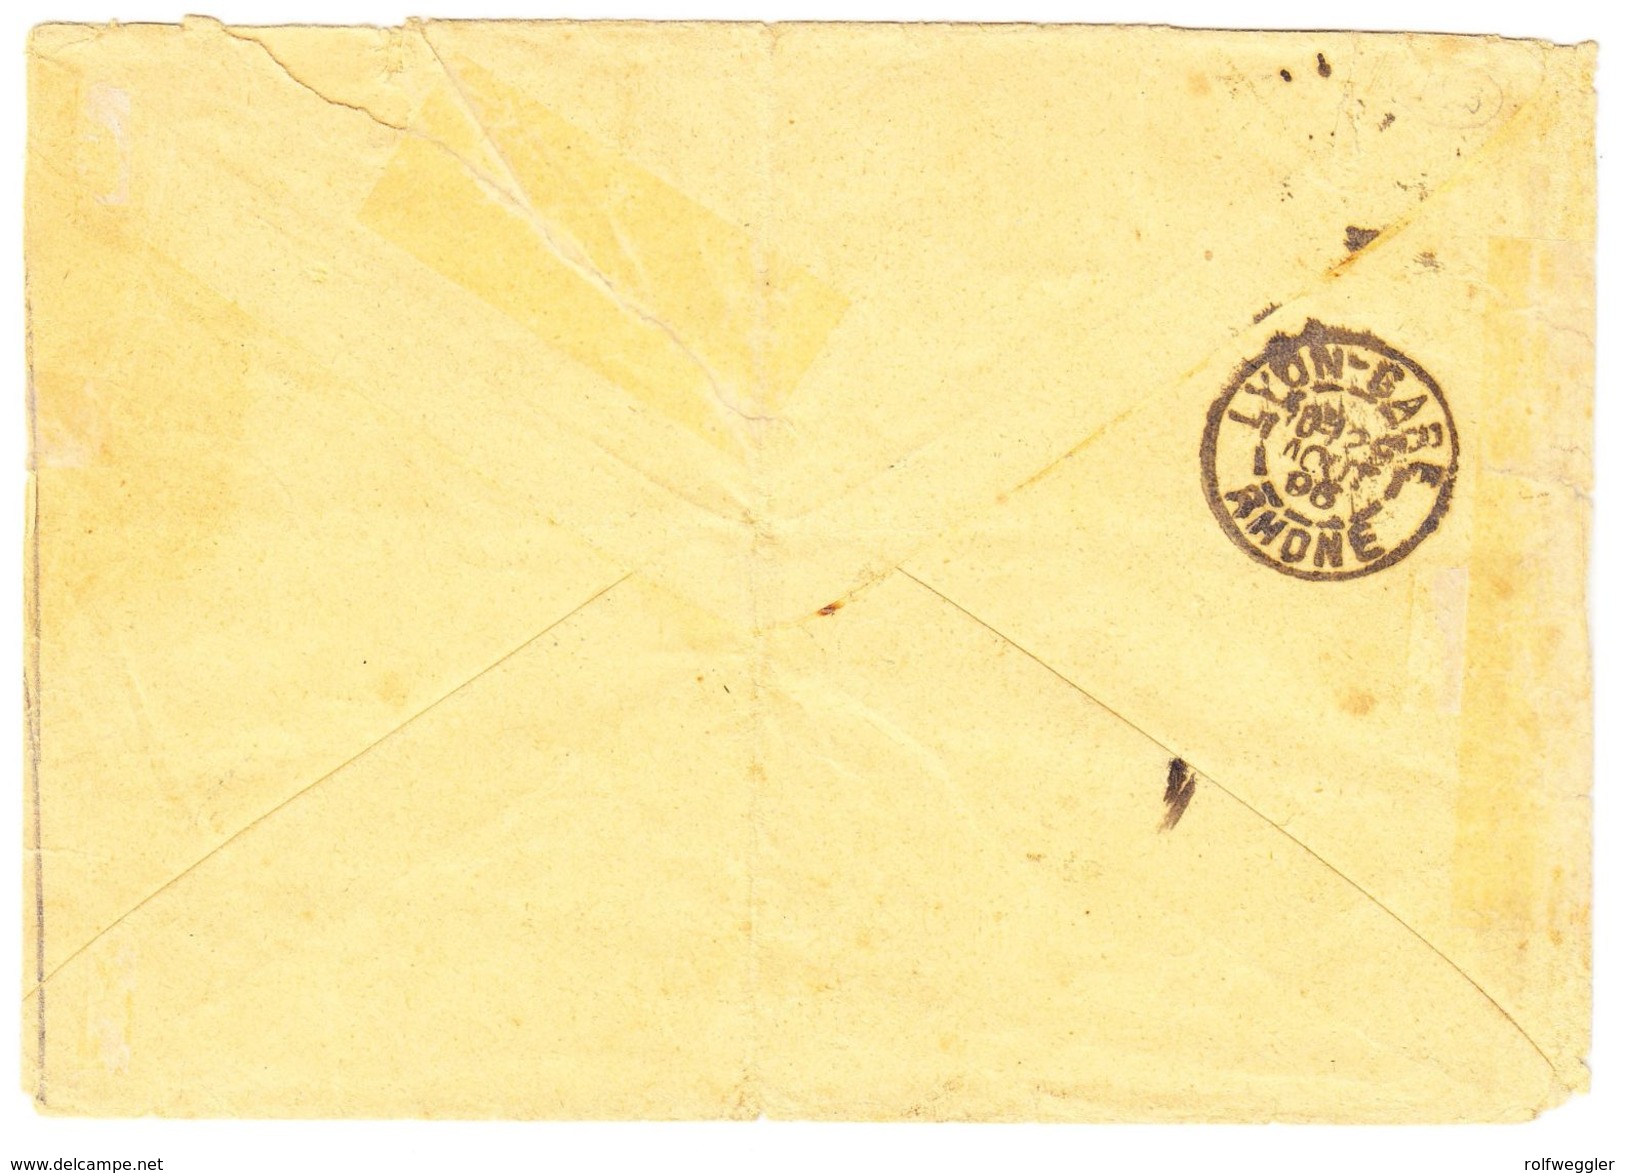 30. Juli 1896 Brief Von Tamatave Madagaskar Nach Culliary Nähe St. Croix; Mit Schweizer Strafportomarke 50 Rappen; - Lettres & Documents